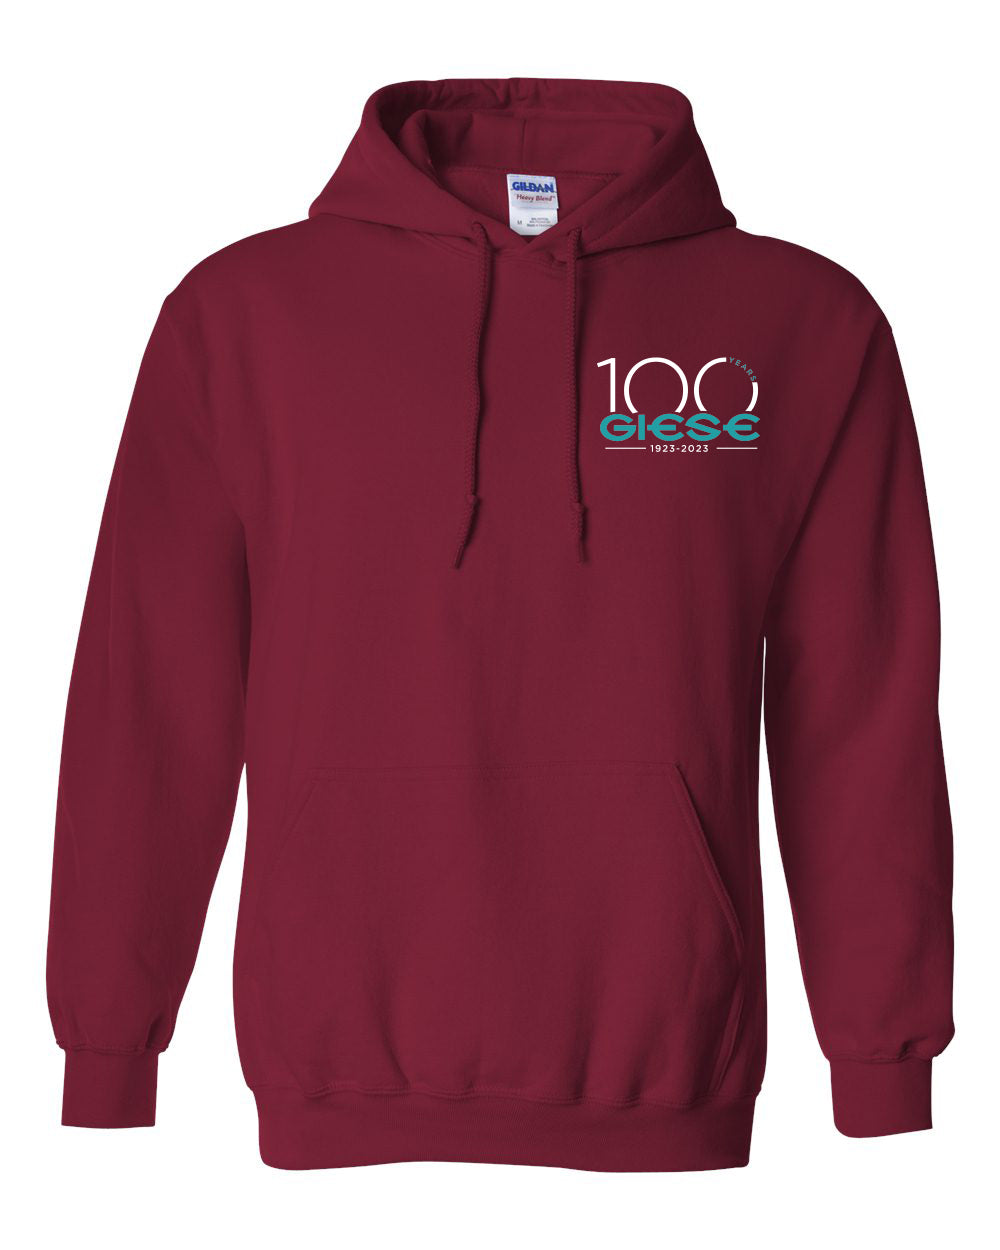 18500 - GIESE - Heavy Blend™ Hooded Sweatshirt